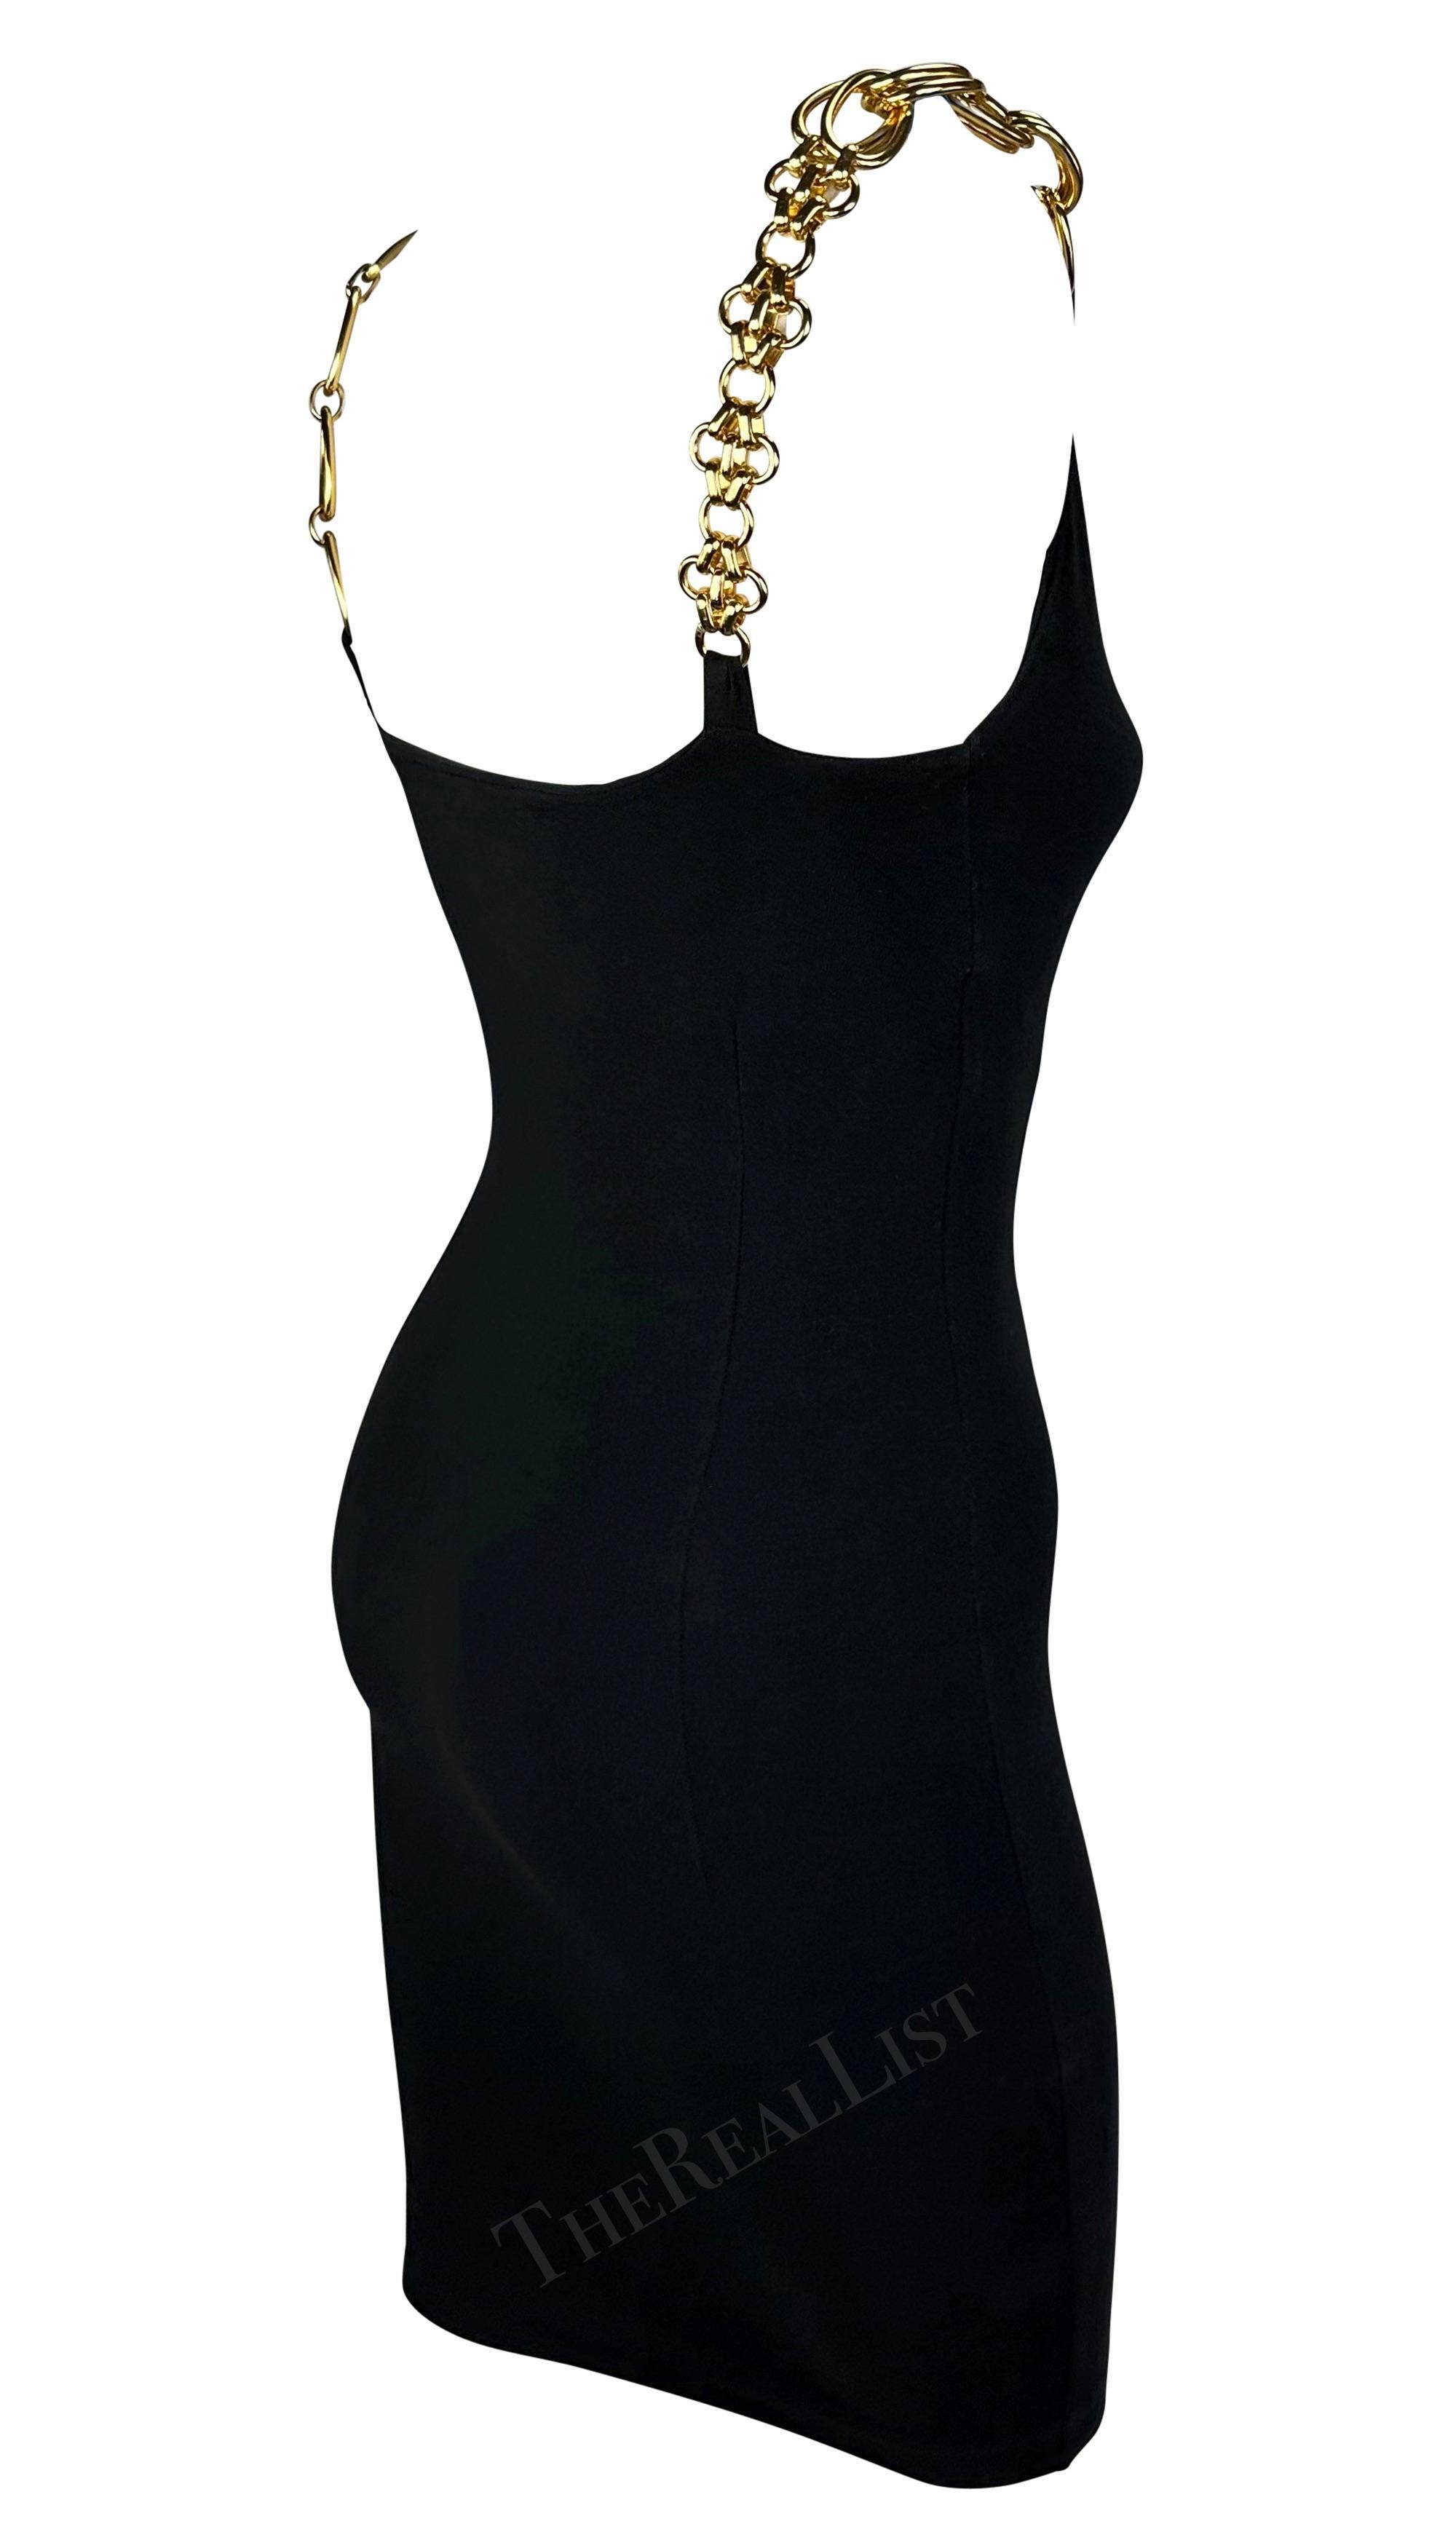 S/S 1991 Dolce & Gabbana Black Bodycon Gold Chain Strap Mini Dress For Sale 3